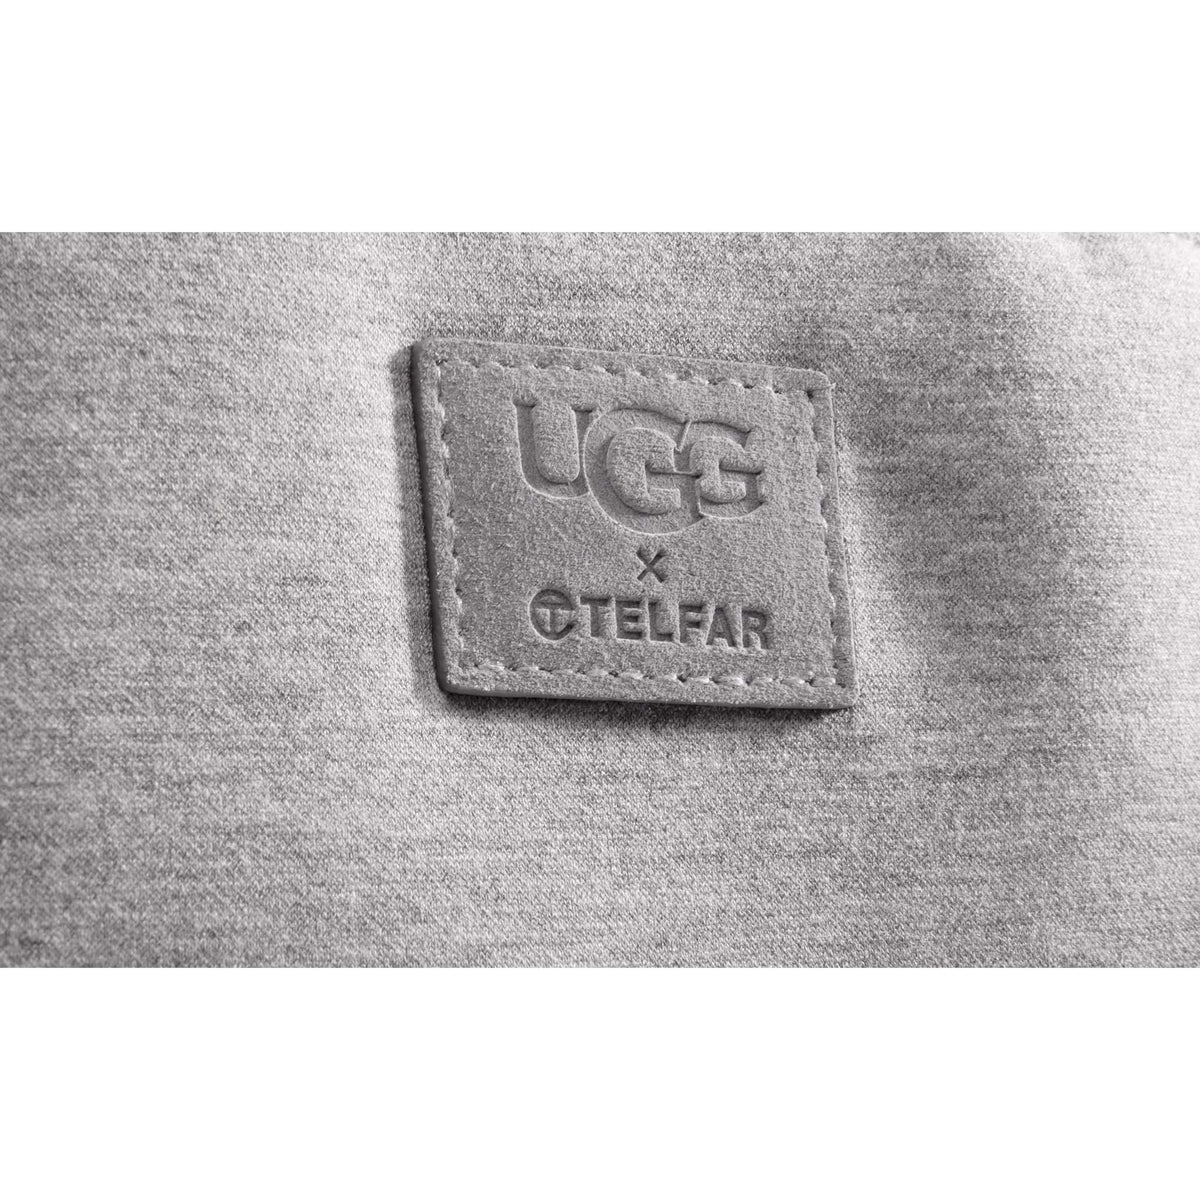 UGG x TELFAR Large Fleece Shopper - Heather Grey